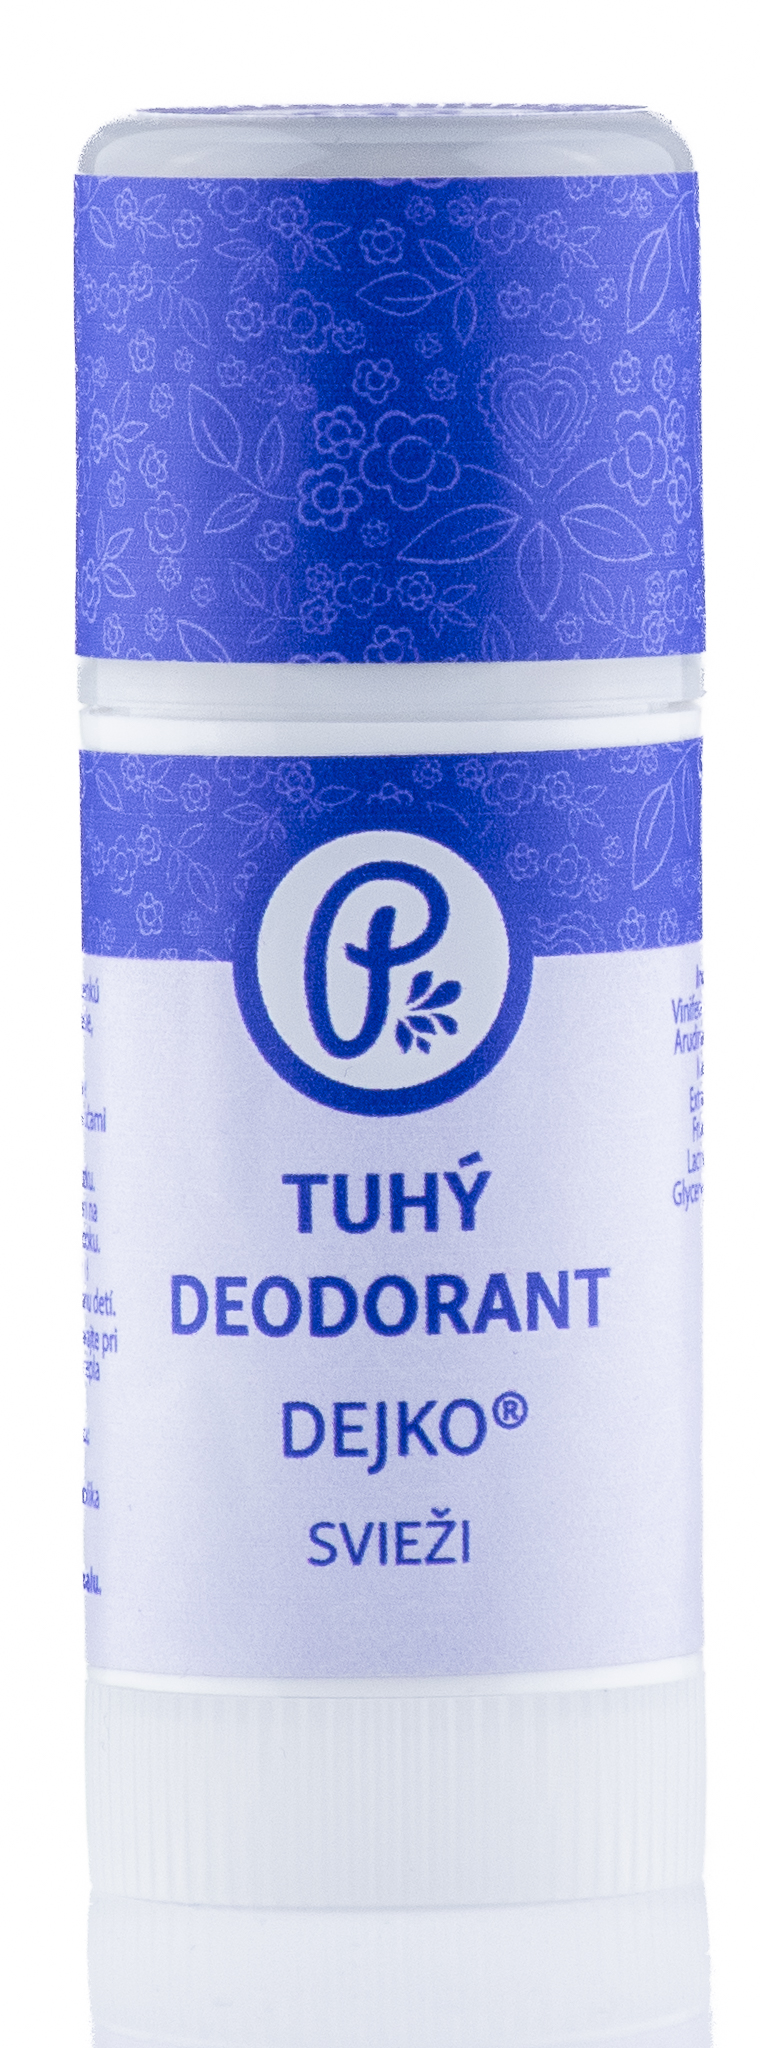 PANAKEIA DEJKO® - tuhý prírodný deodorant svieži 40ml